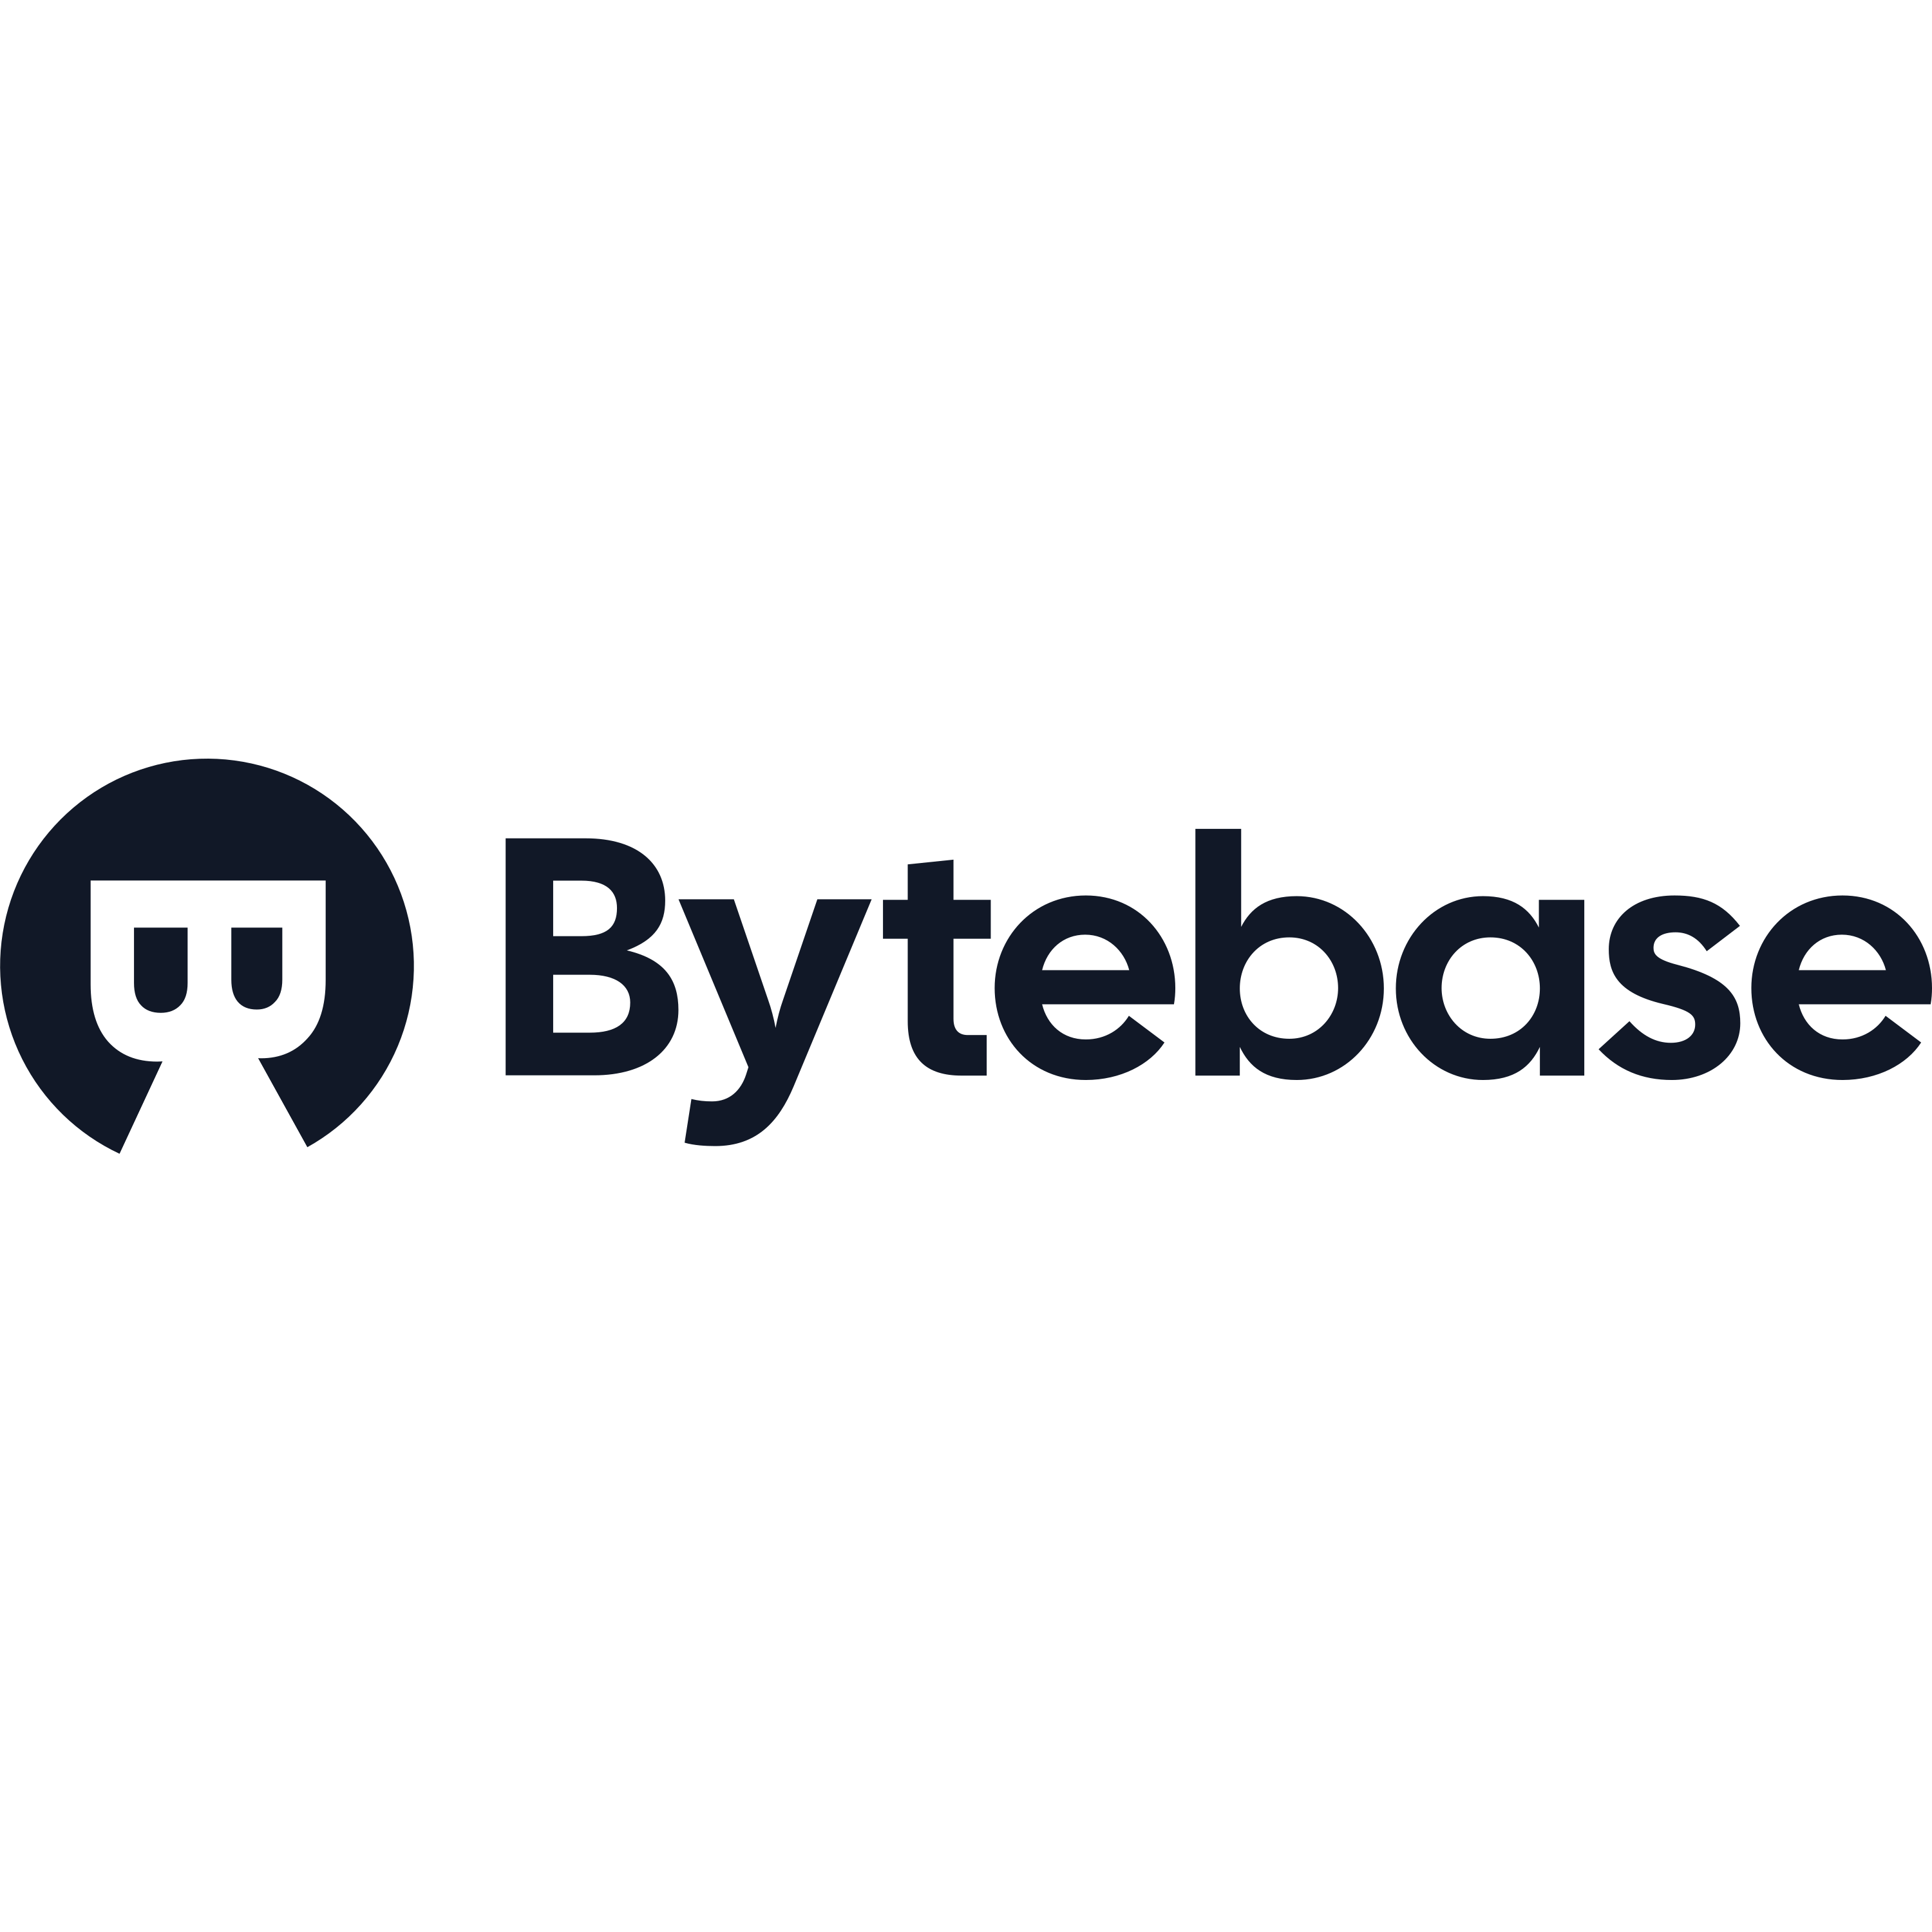 Bytebase Logo  Transparent Image